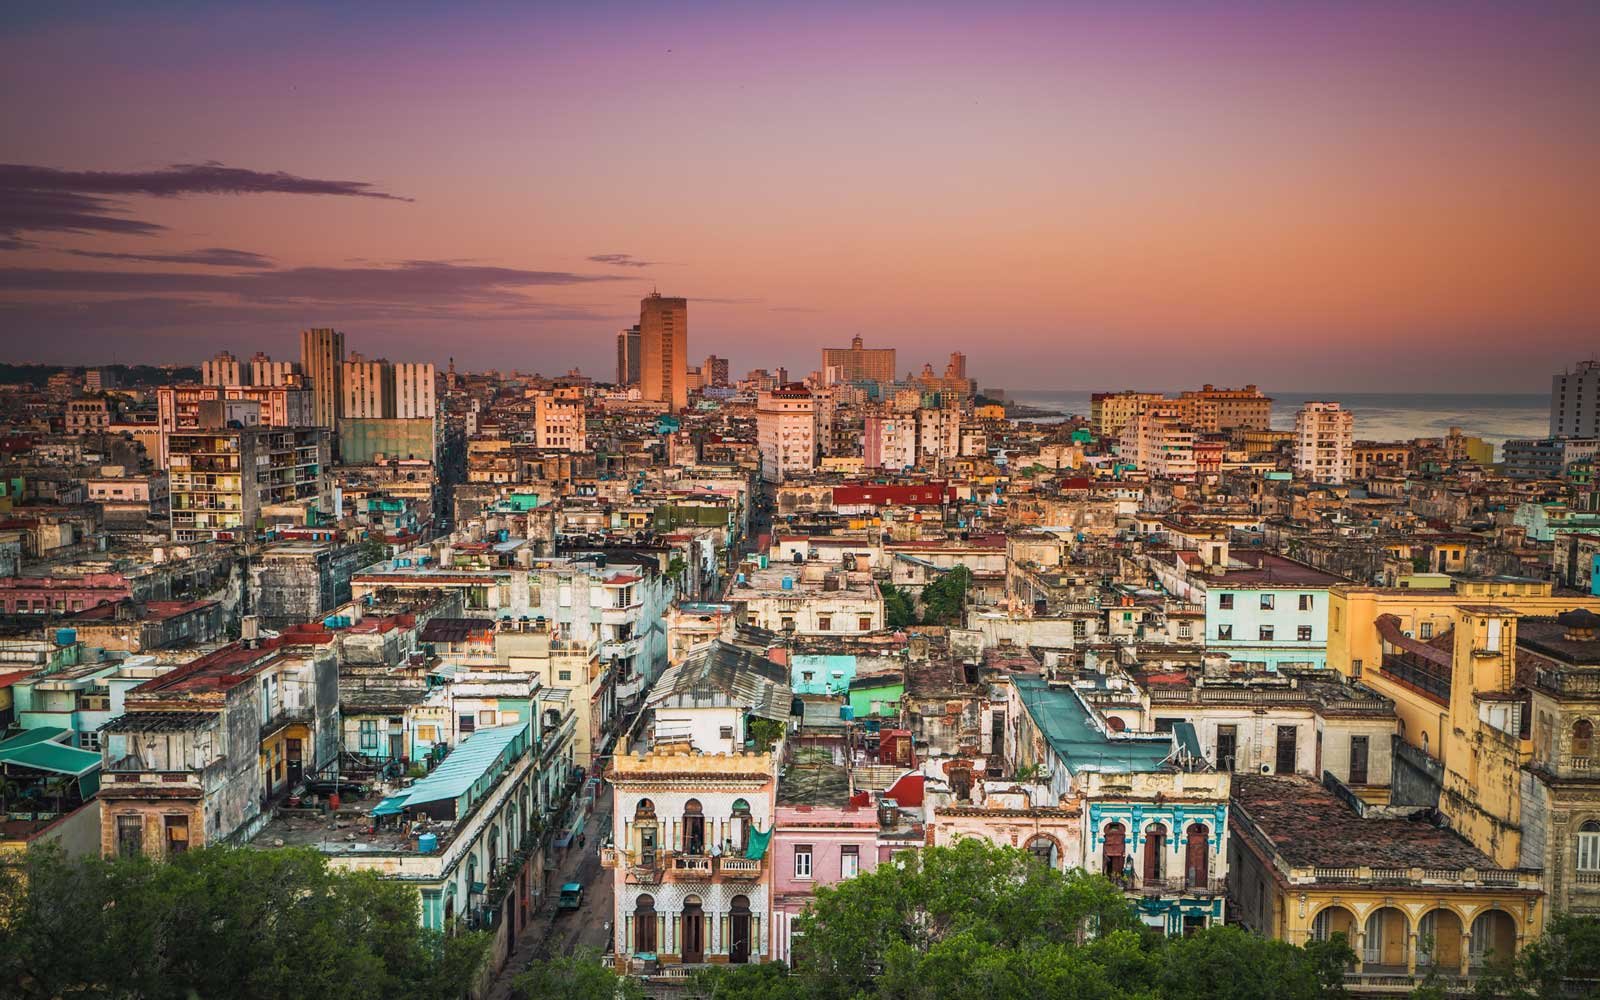 Le moyen le plus simple d’obtenir votre visa pour Cuba